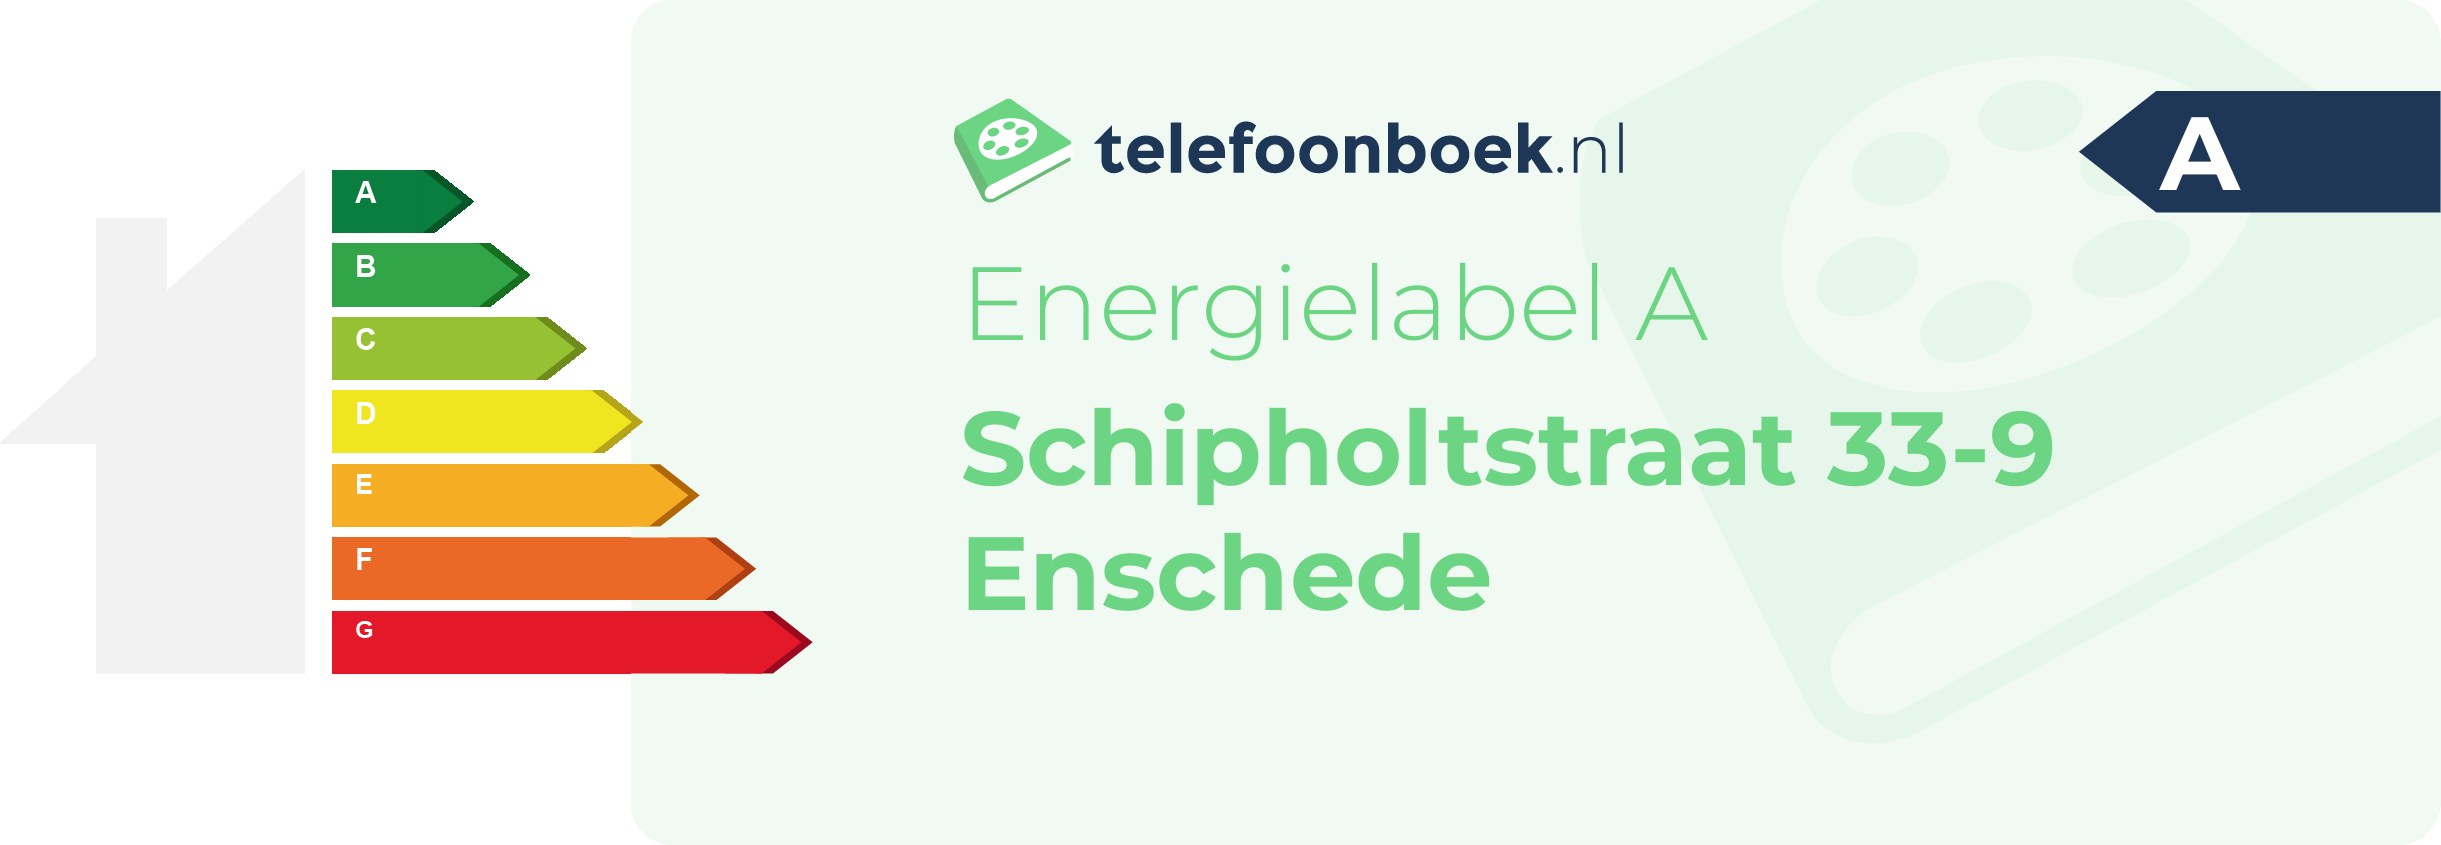 Energielabel Schipholtstraat 33-9 Enschede